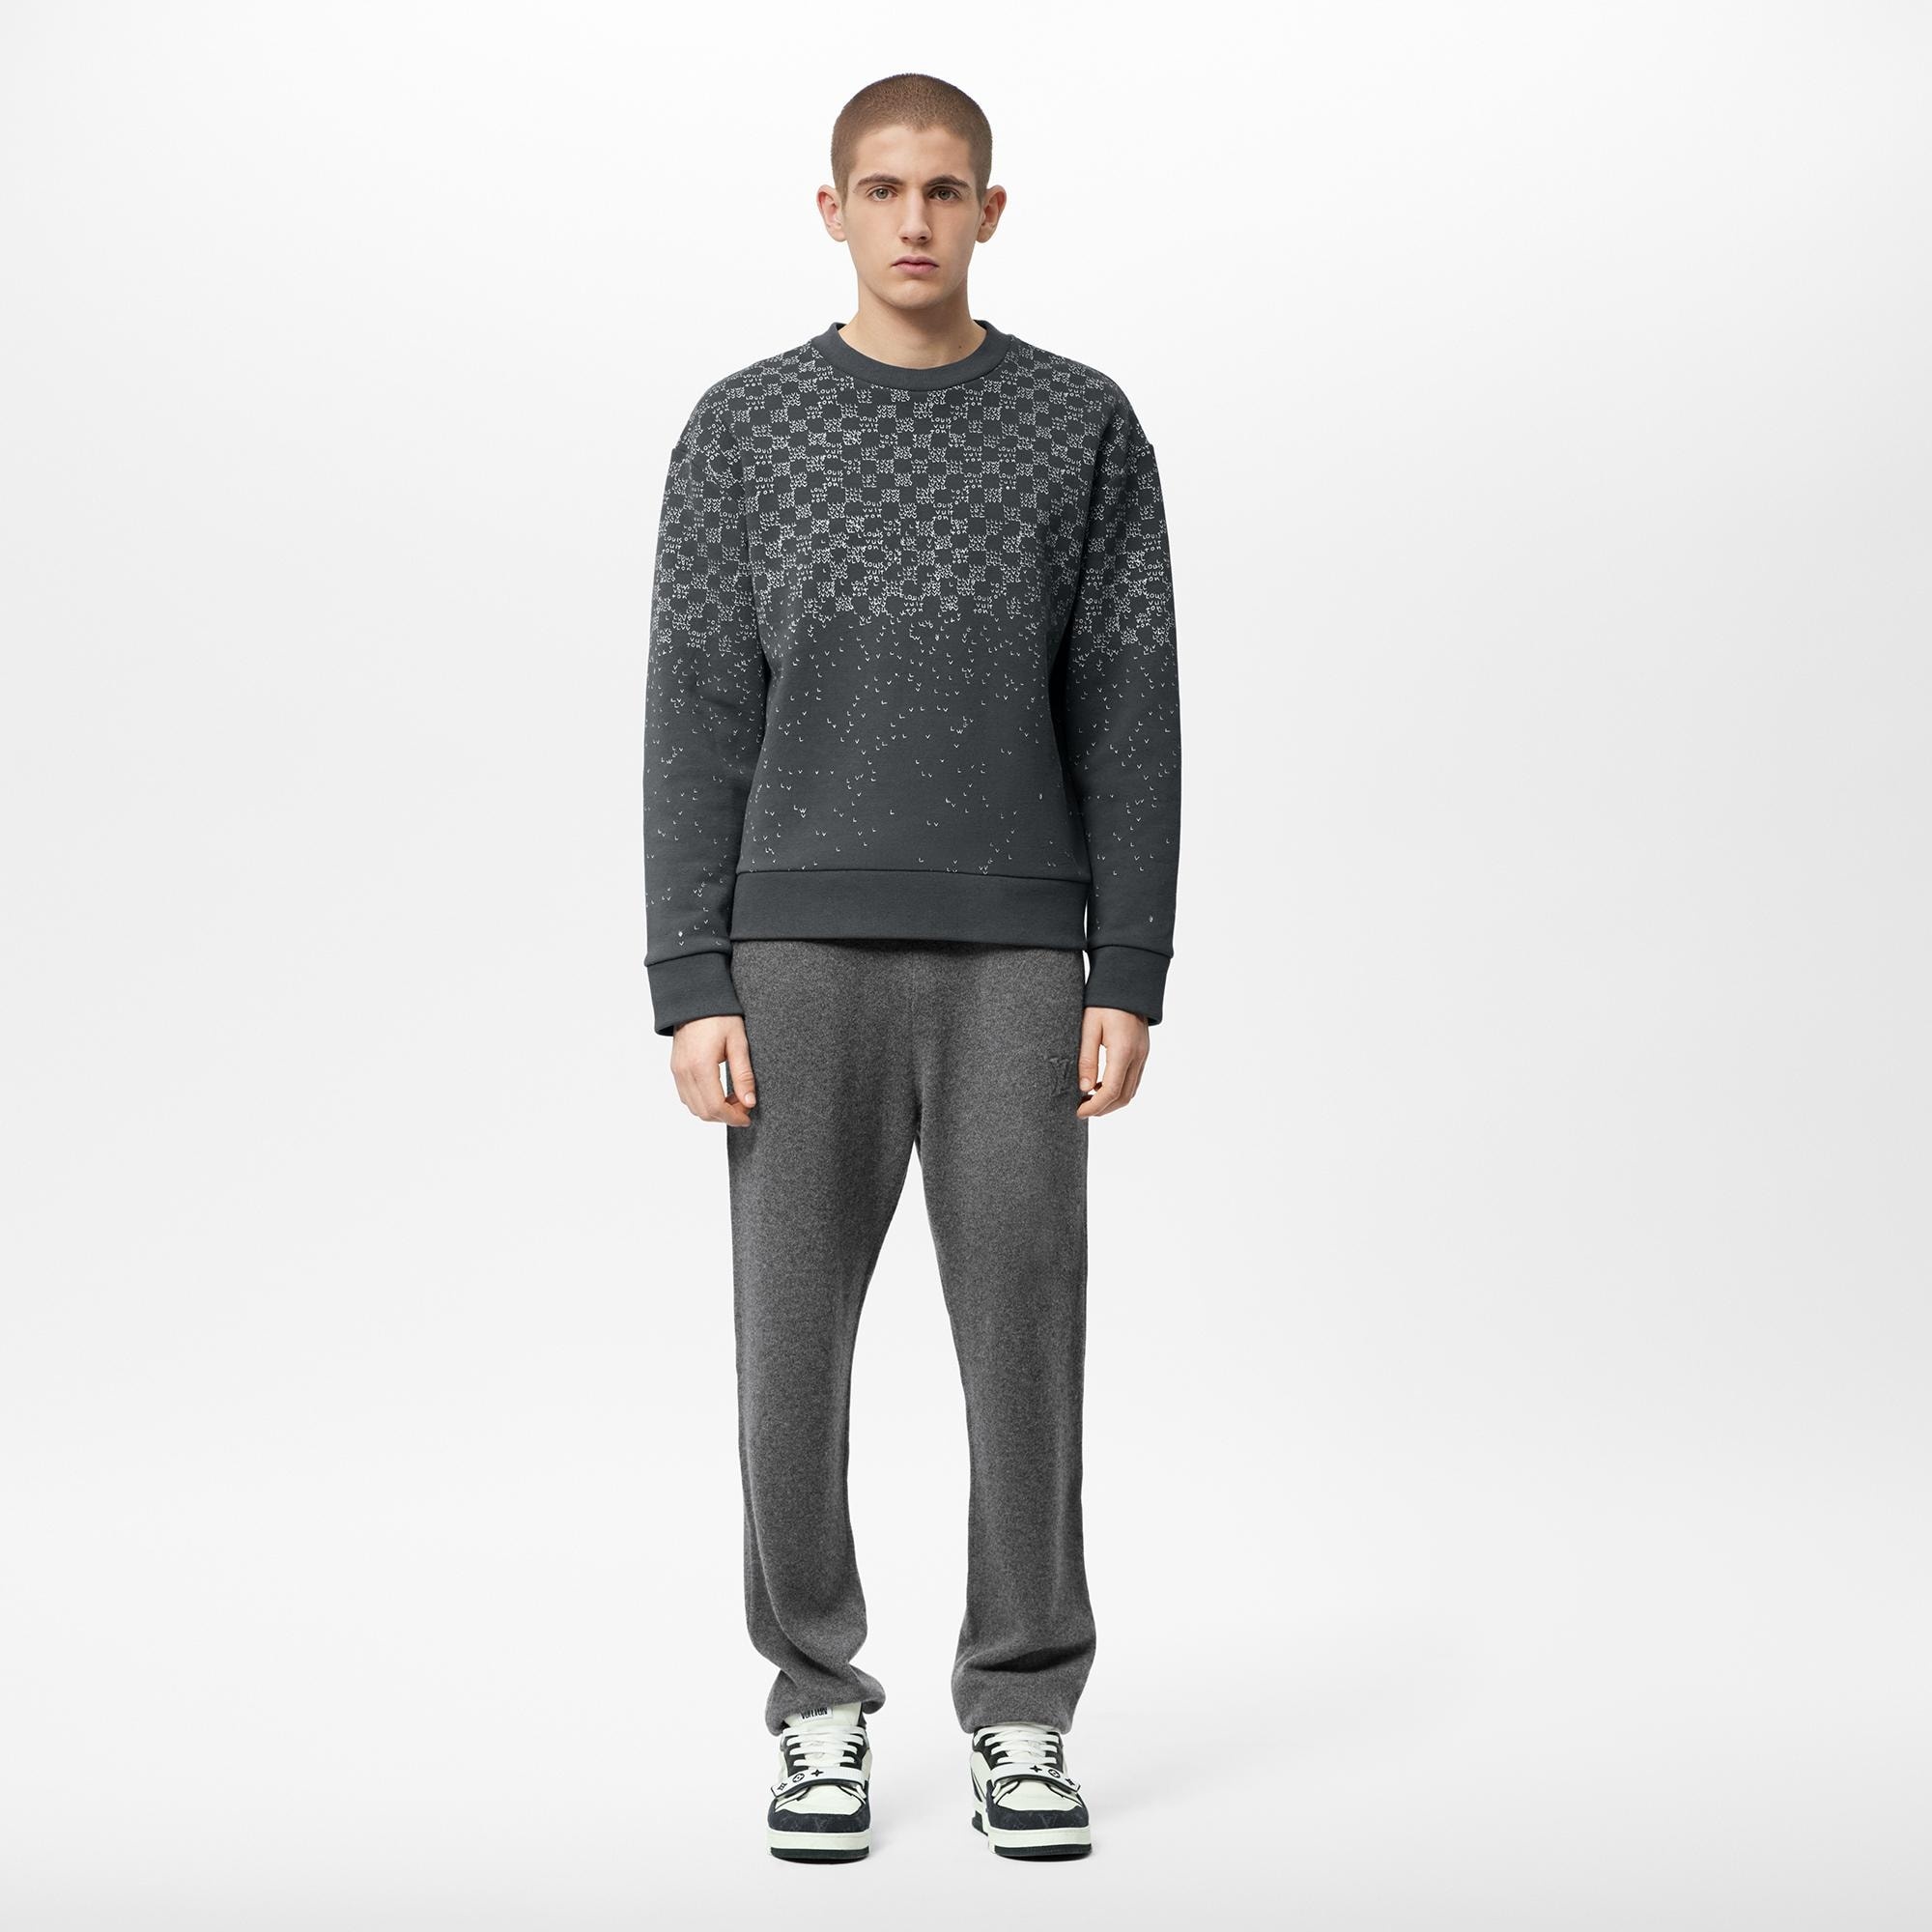 Louis Vuitton Mix Cashmere Sweatpants